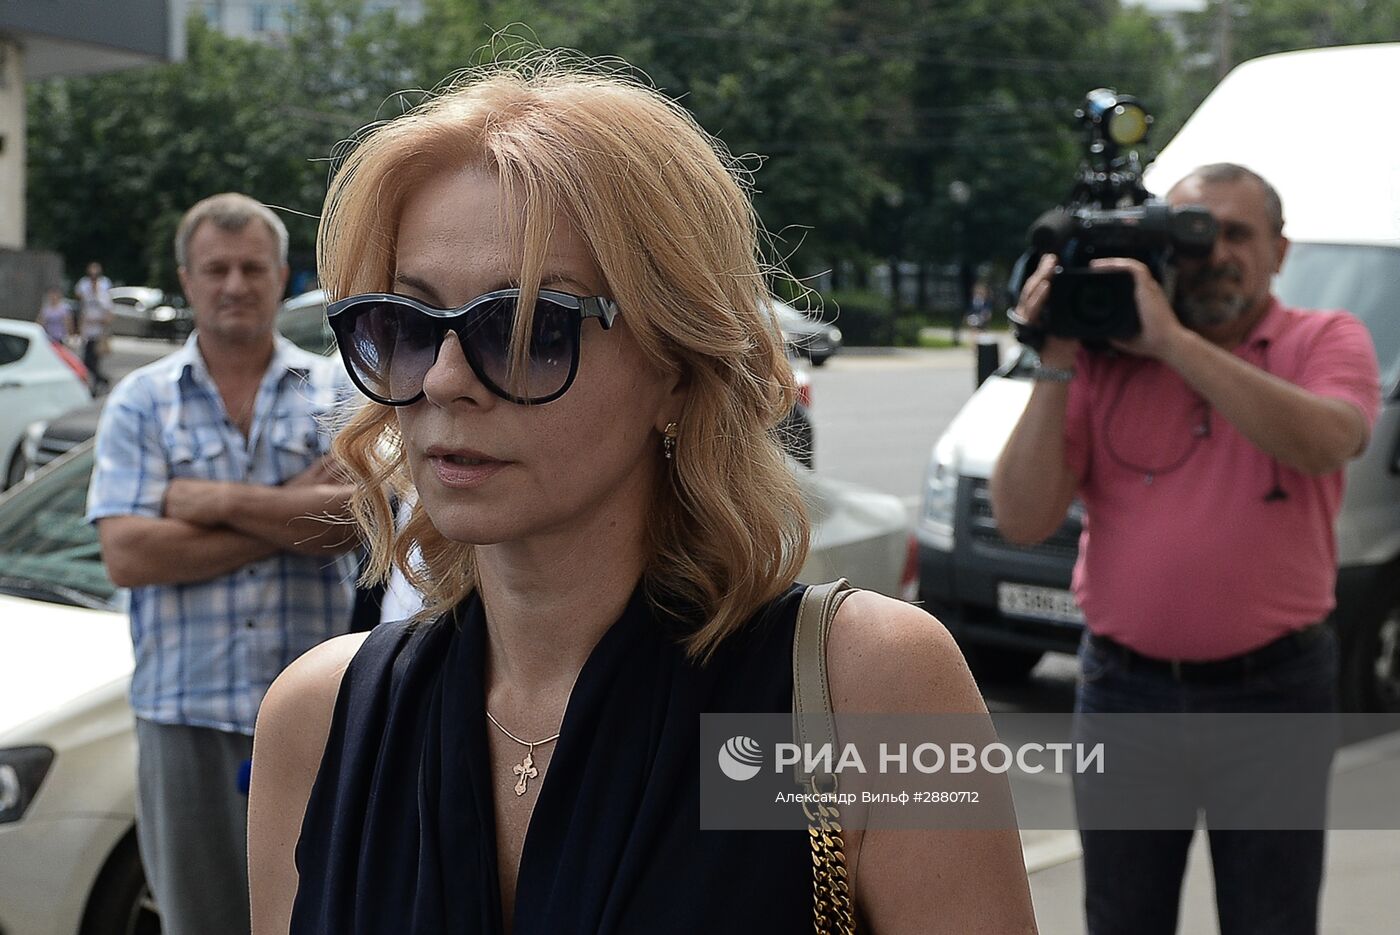 Басманный суд Москвы арестовал губернатора Кировской области Никиту Белых